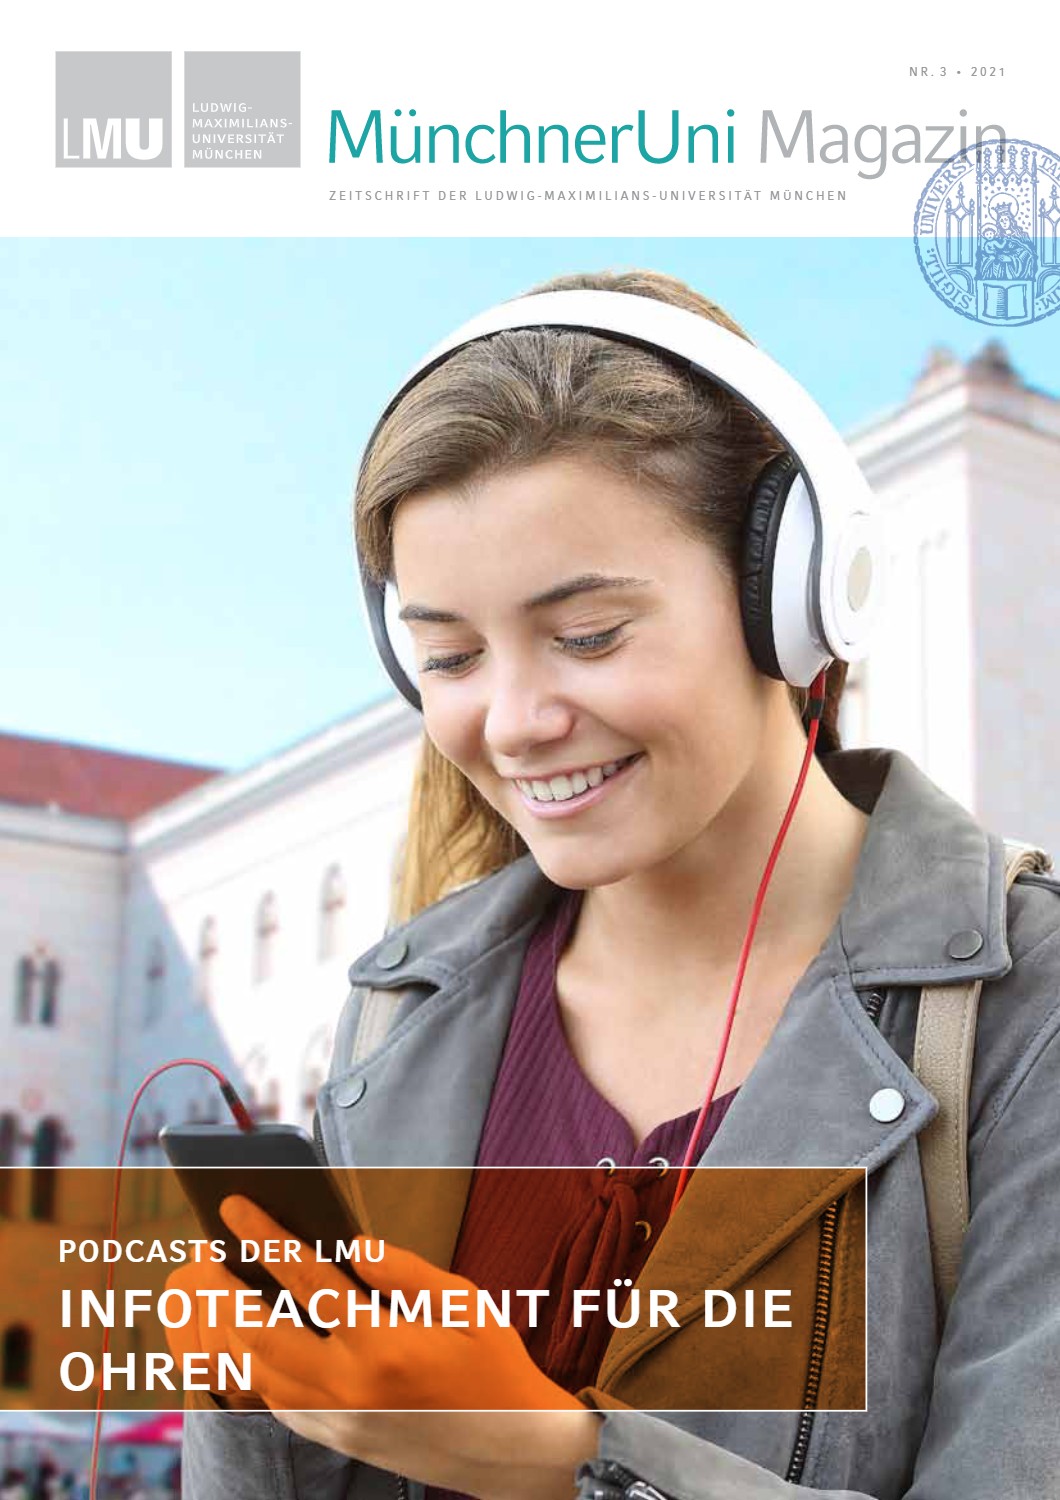 Podcasts der LMU – Infoteachment für die Ohren